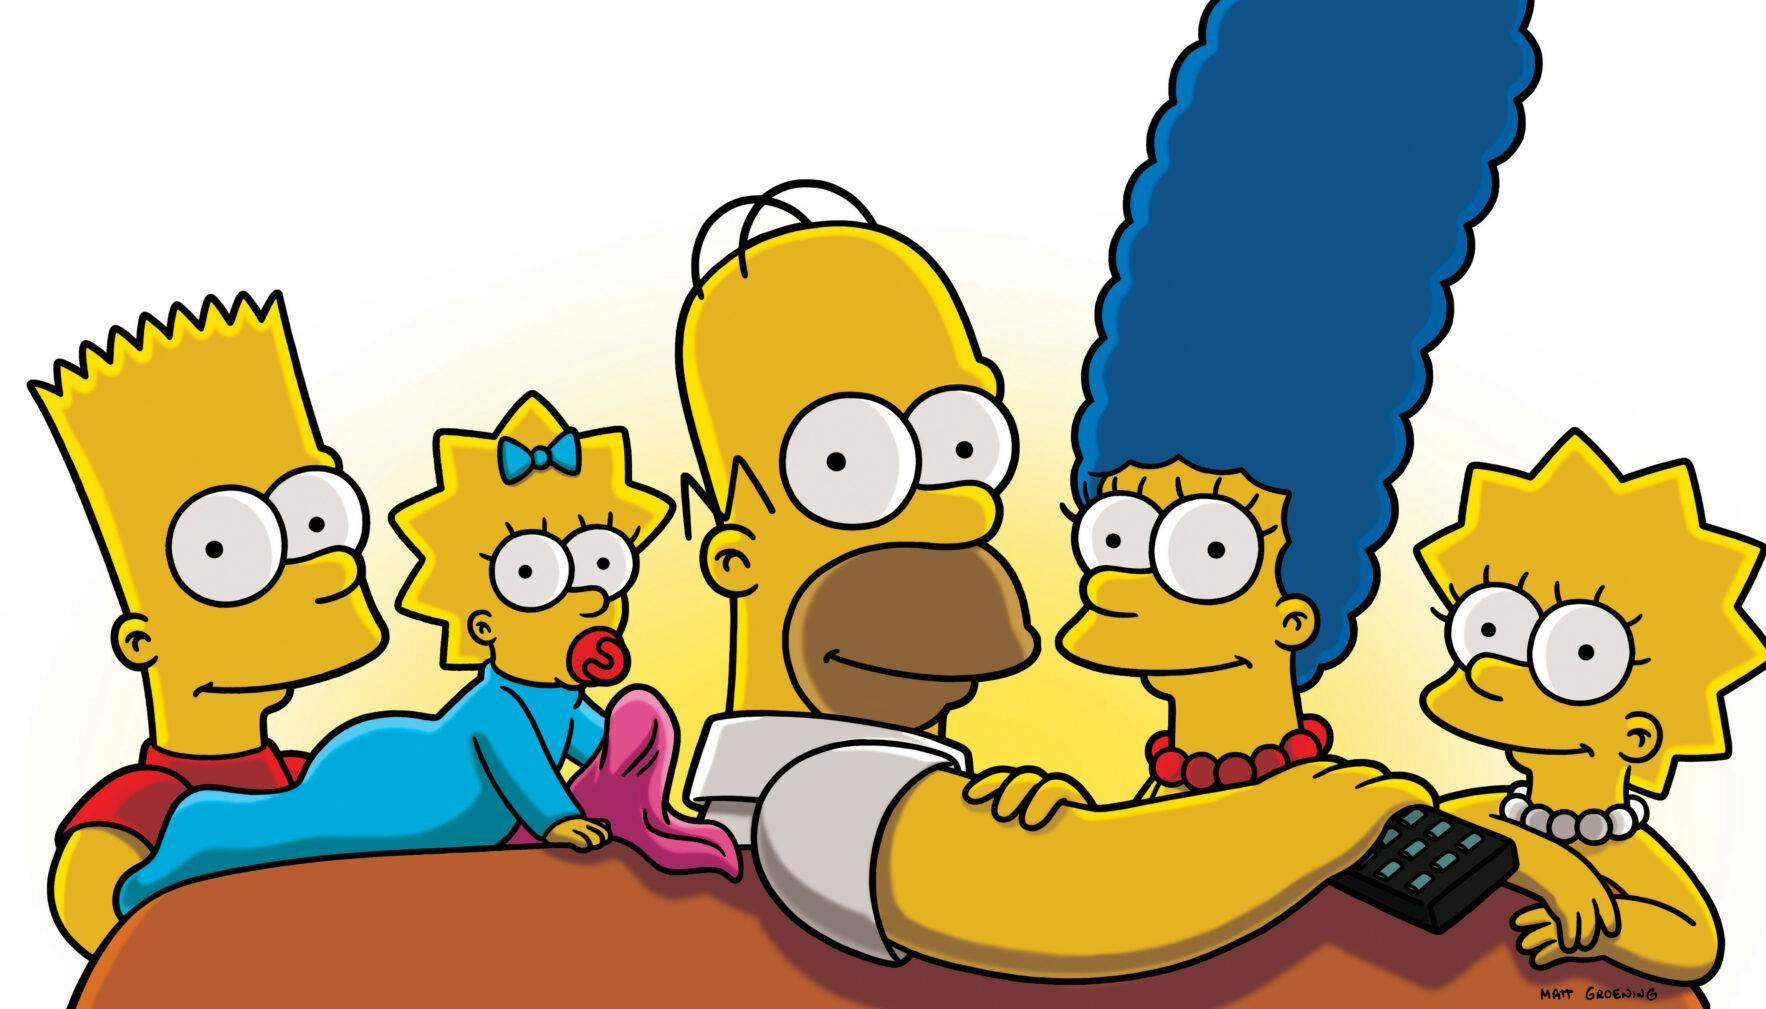 https://imgix.vielskerserier.dk/2020/10/The-Simpsons.jpg